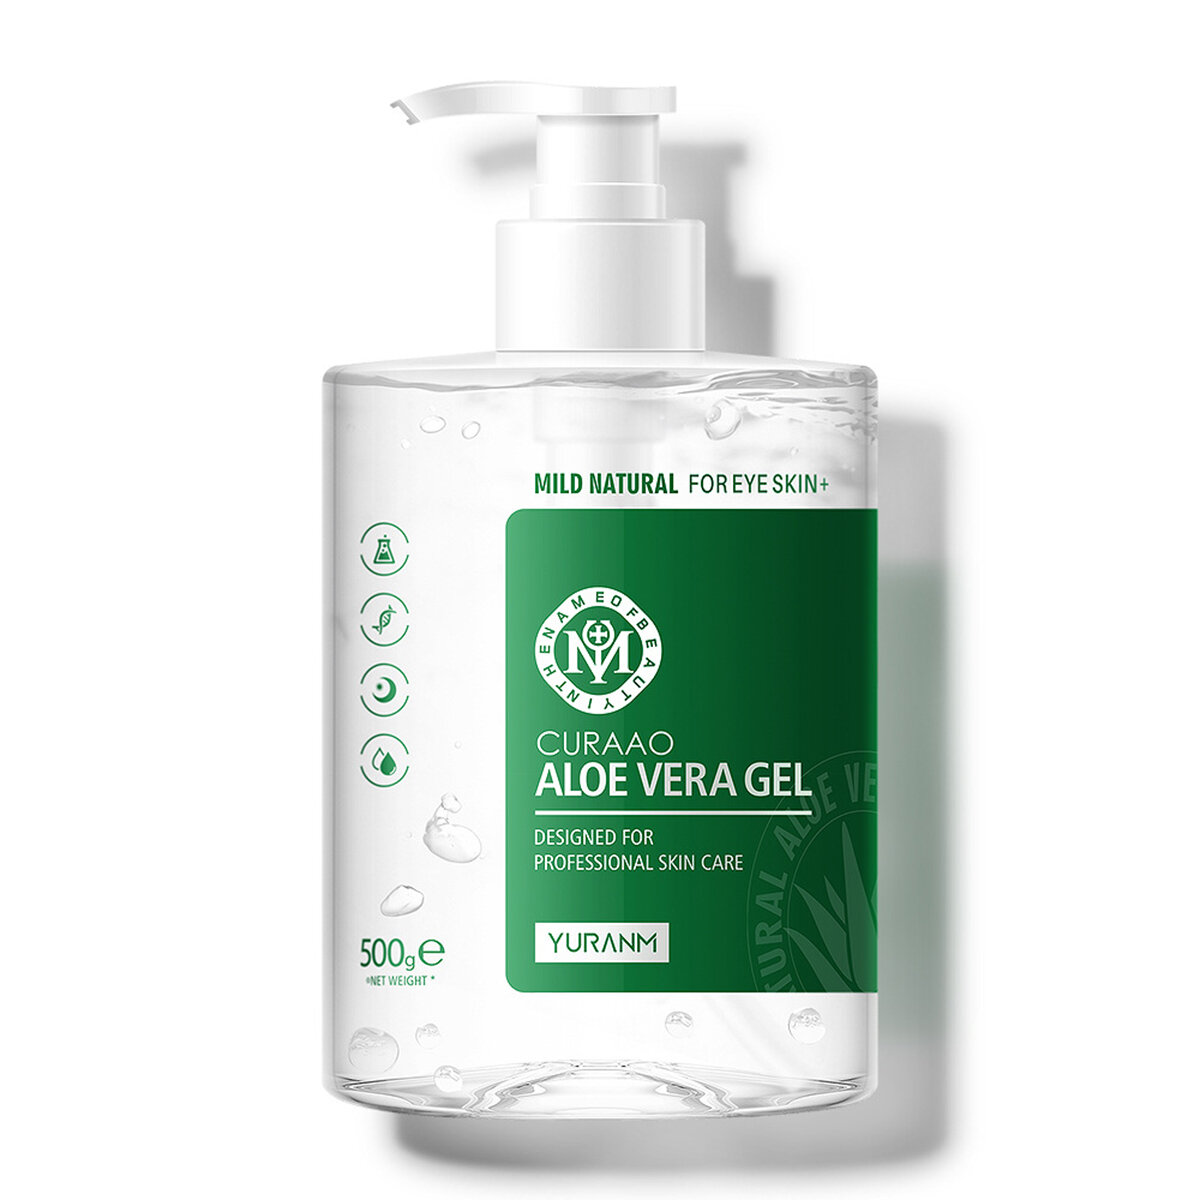 

500gPure Aloe Vera Gel Hyaluronic Acid Removal